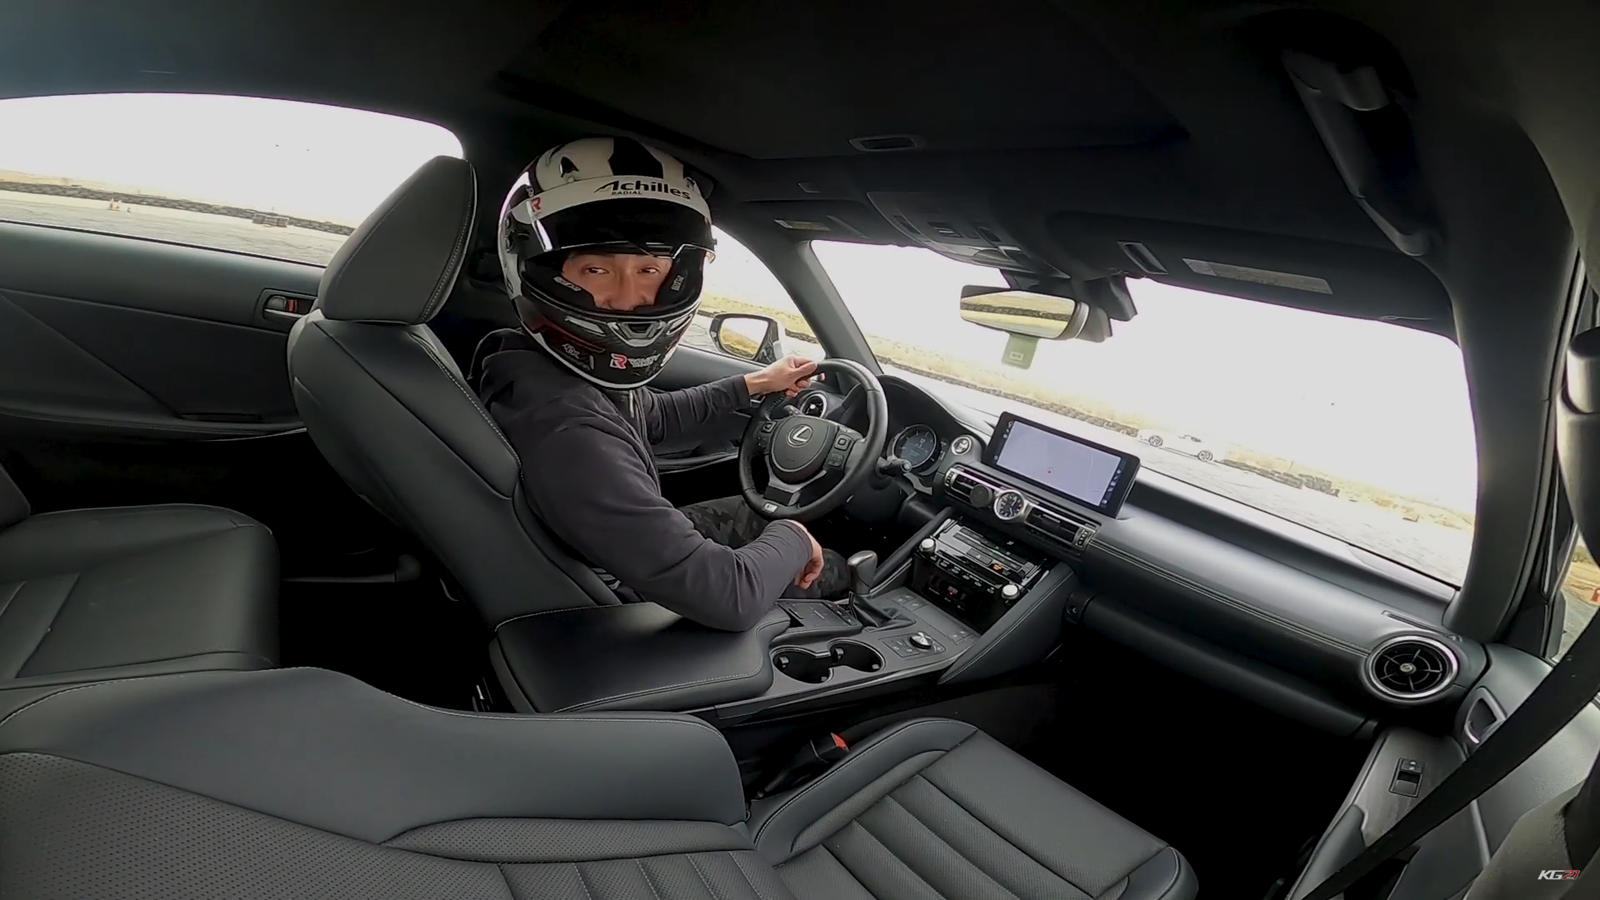 "بالفيديو" سائق فورمولا يختبر قدرات لكزس IS اف سبورت 5